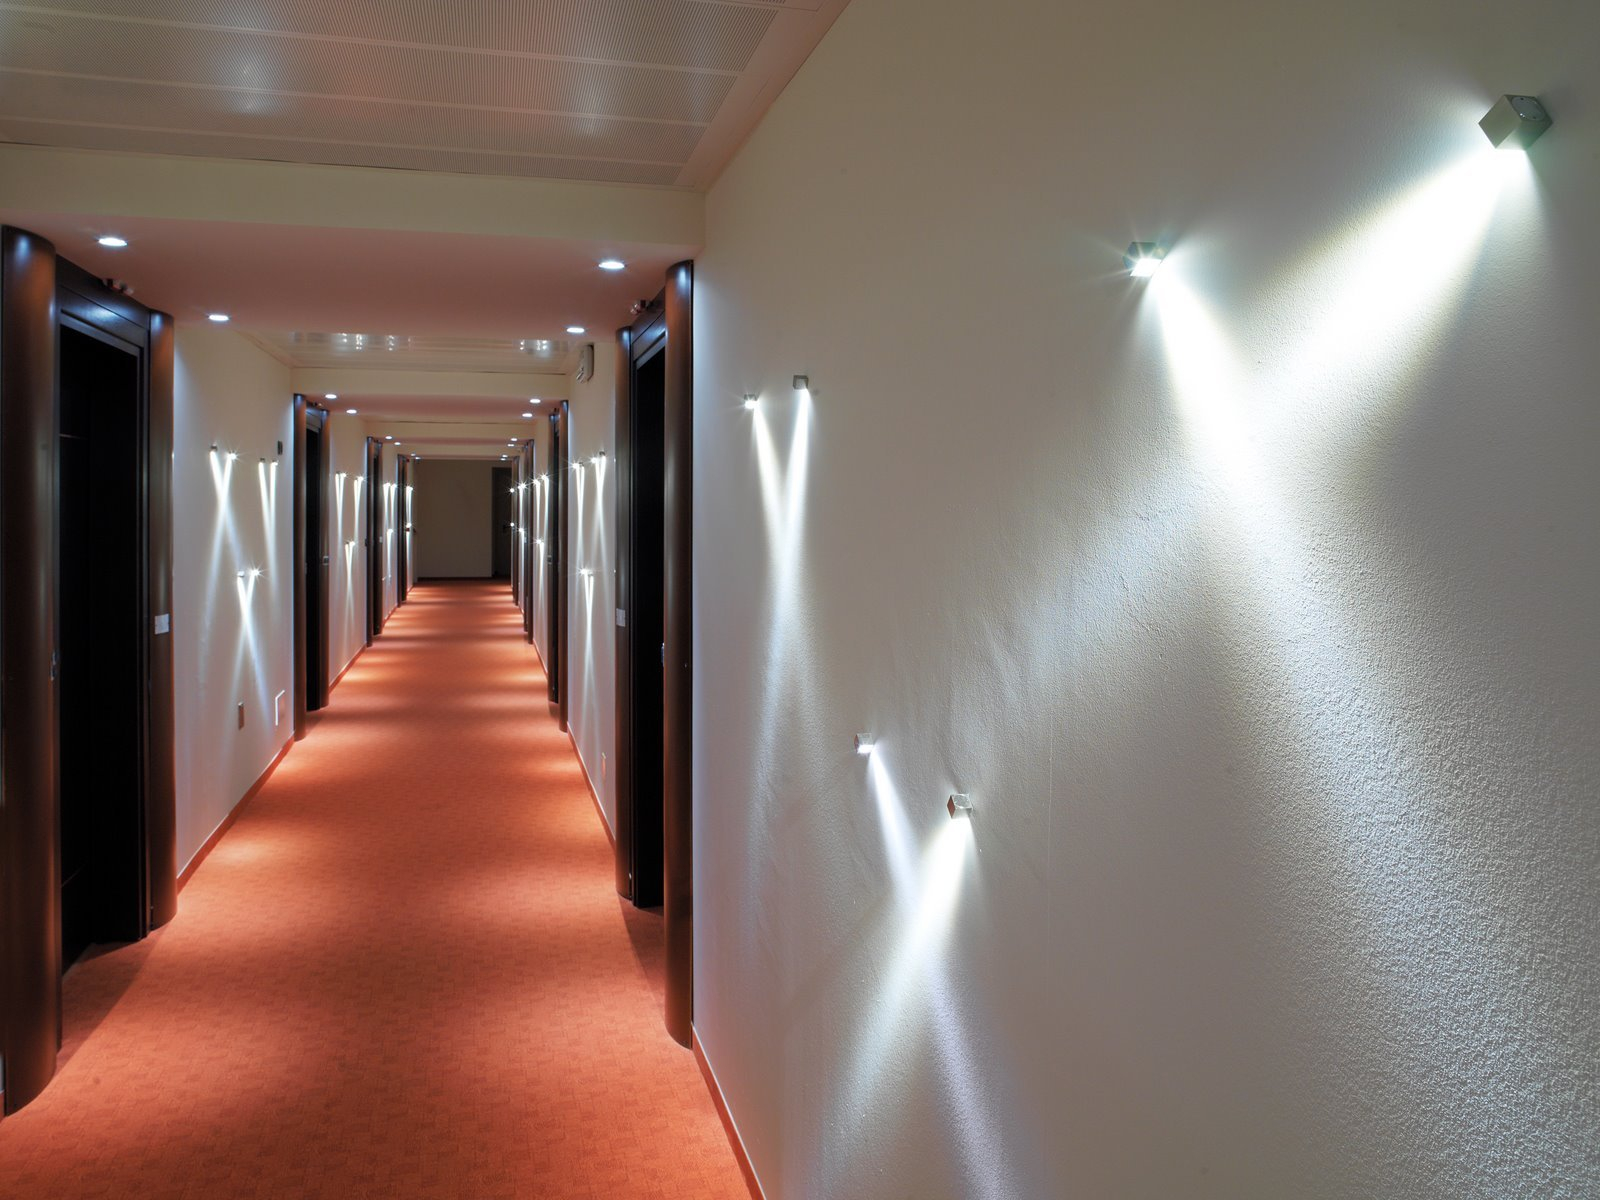 Источник направленного света. Светильники в коридор. Освещение в коридоре. Светодиодная подсветка в коридоре. Декоративная подсветка на стену.